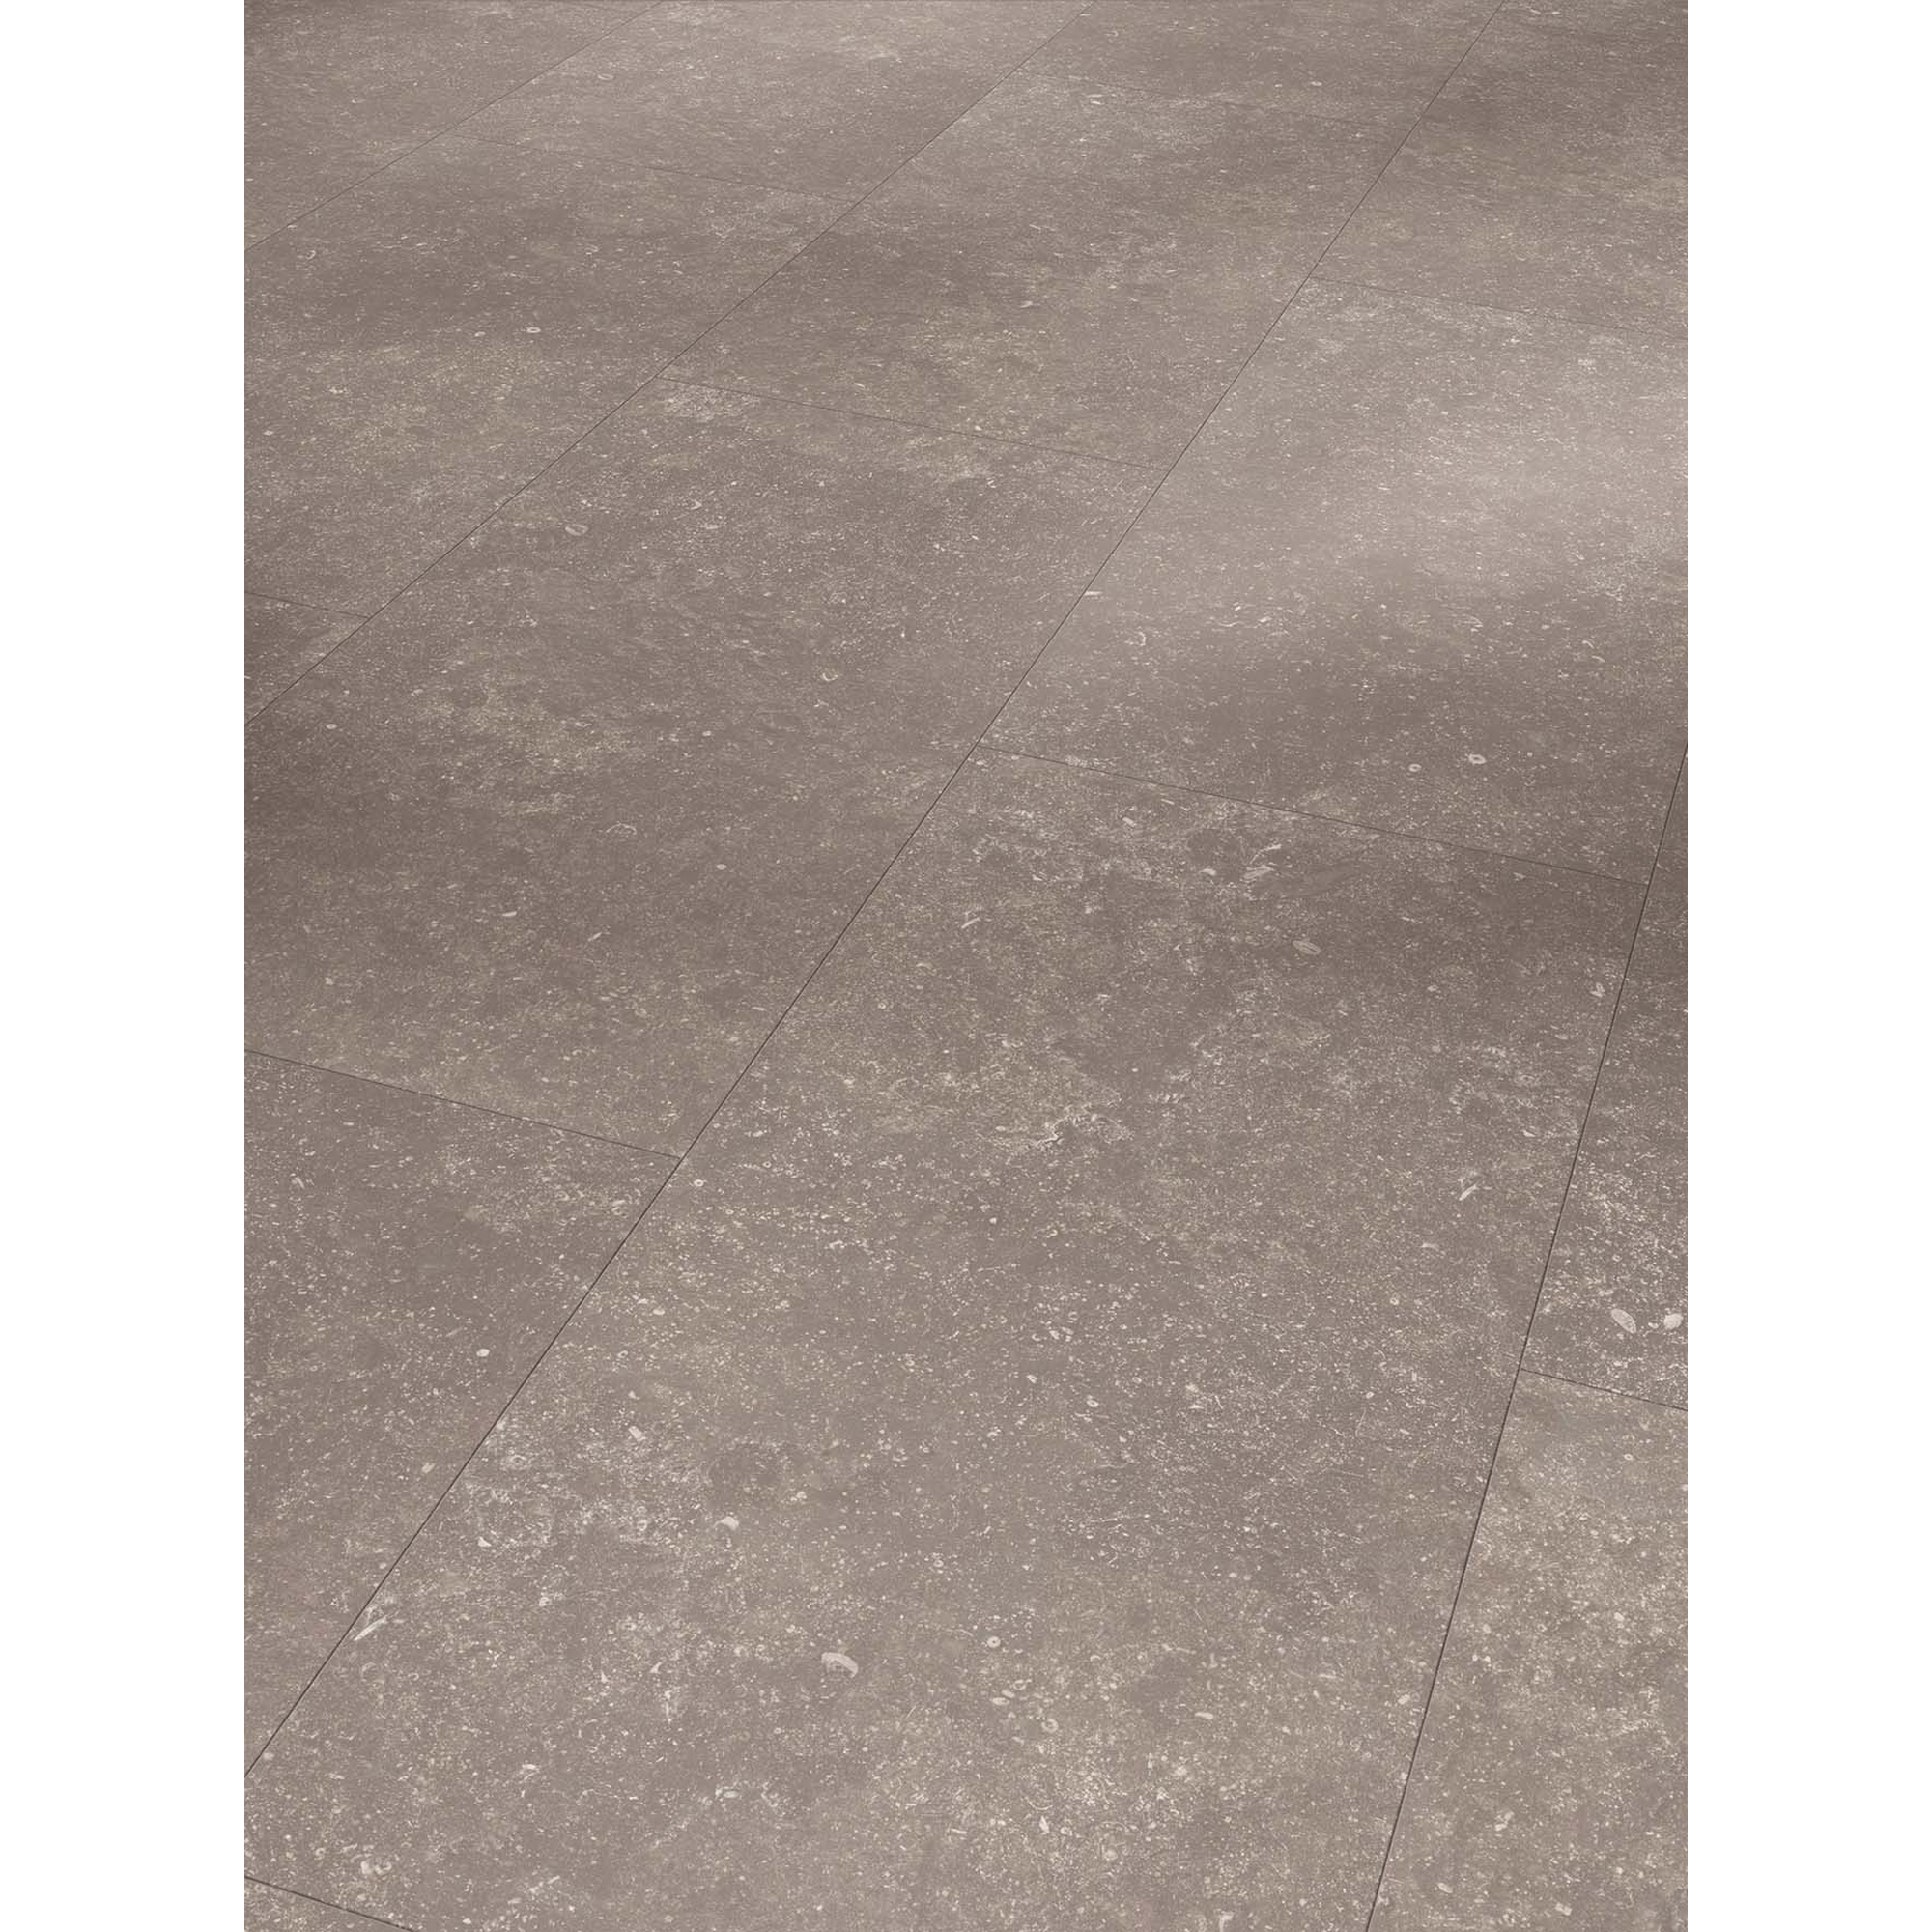 Vinylboden 'Modular ONE' Granit perlgrau 8 mm + product picture